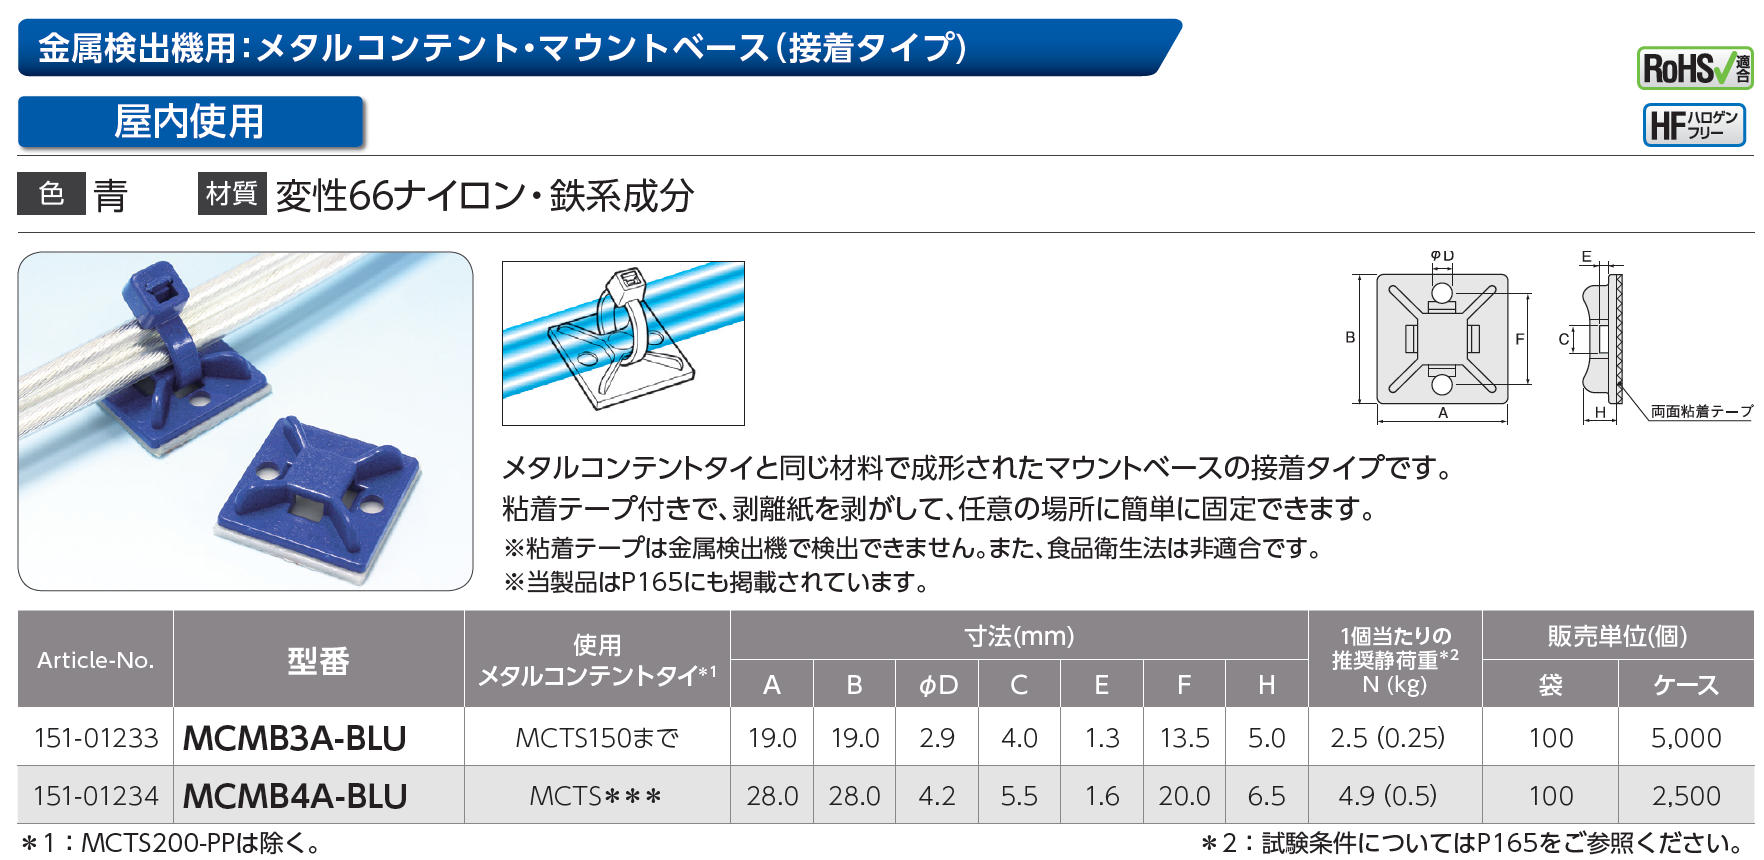 ヘラマンタイトン インシュロック メタルコンテントタイ MCTS300-MST_100本入り - 3